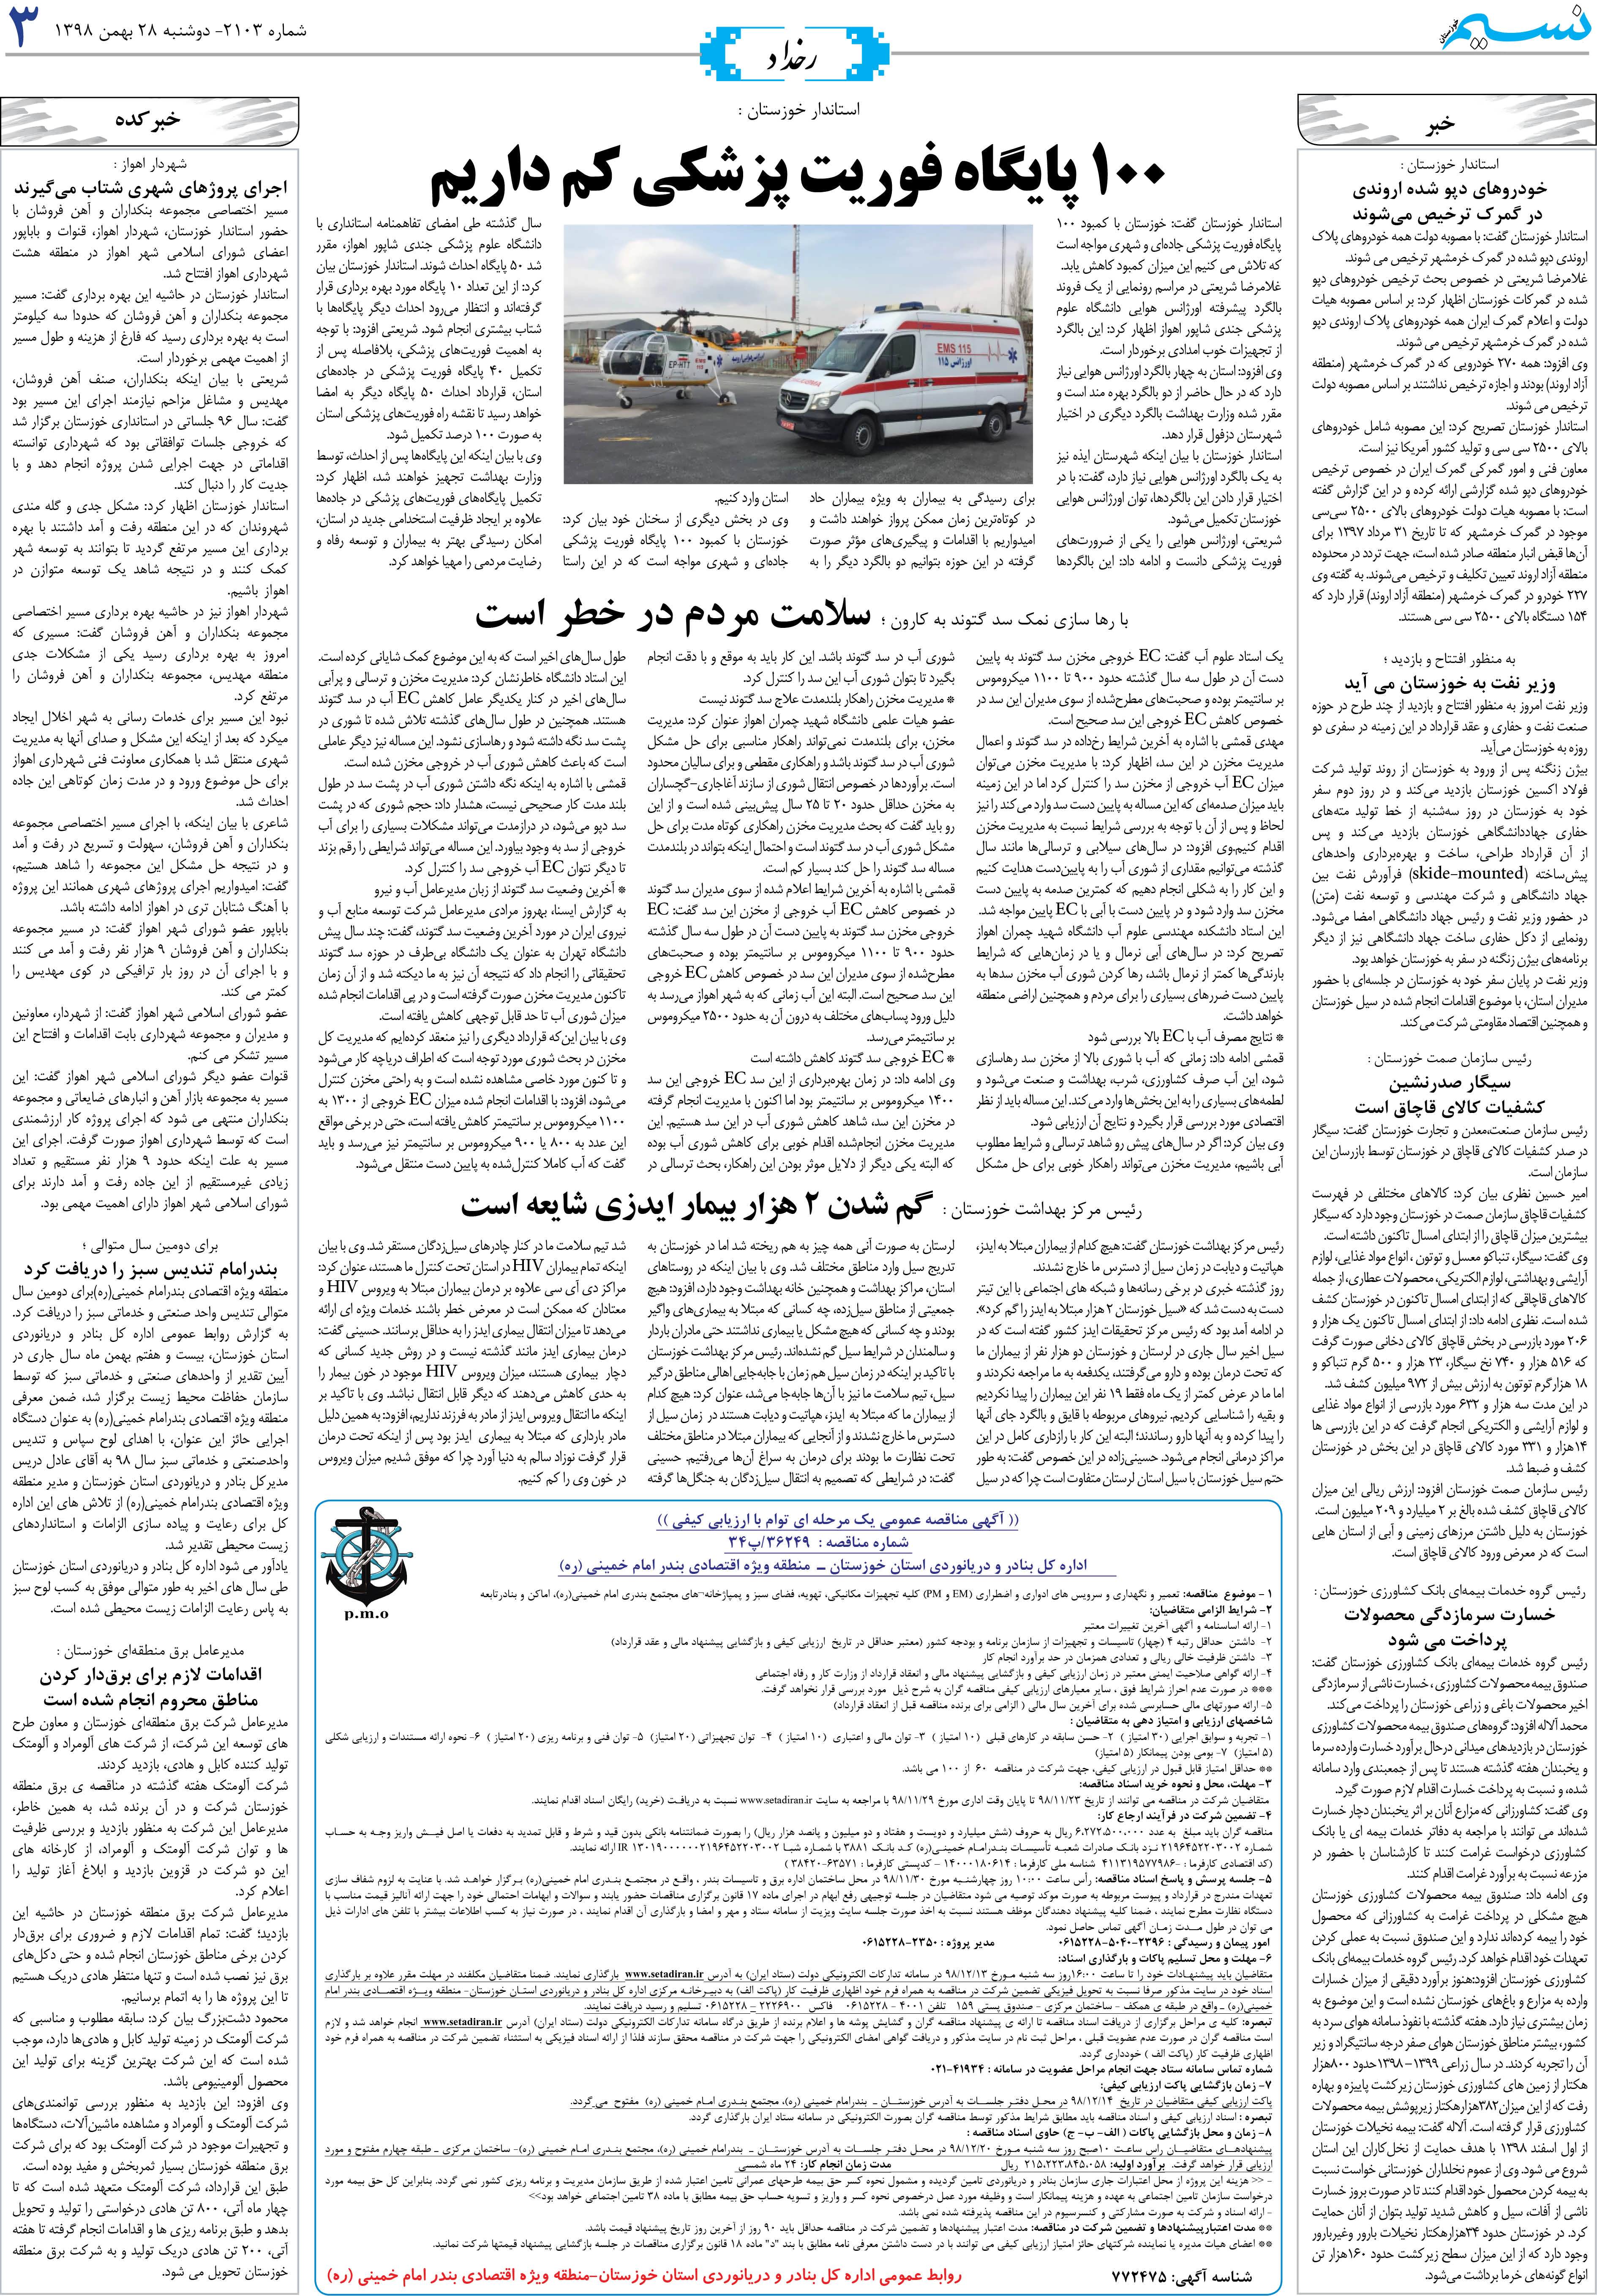 صفحه رخداد روزنامه نسیم شماره 2103